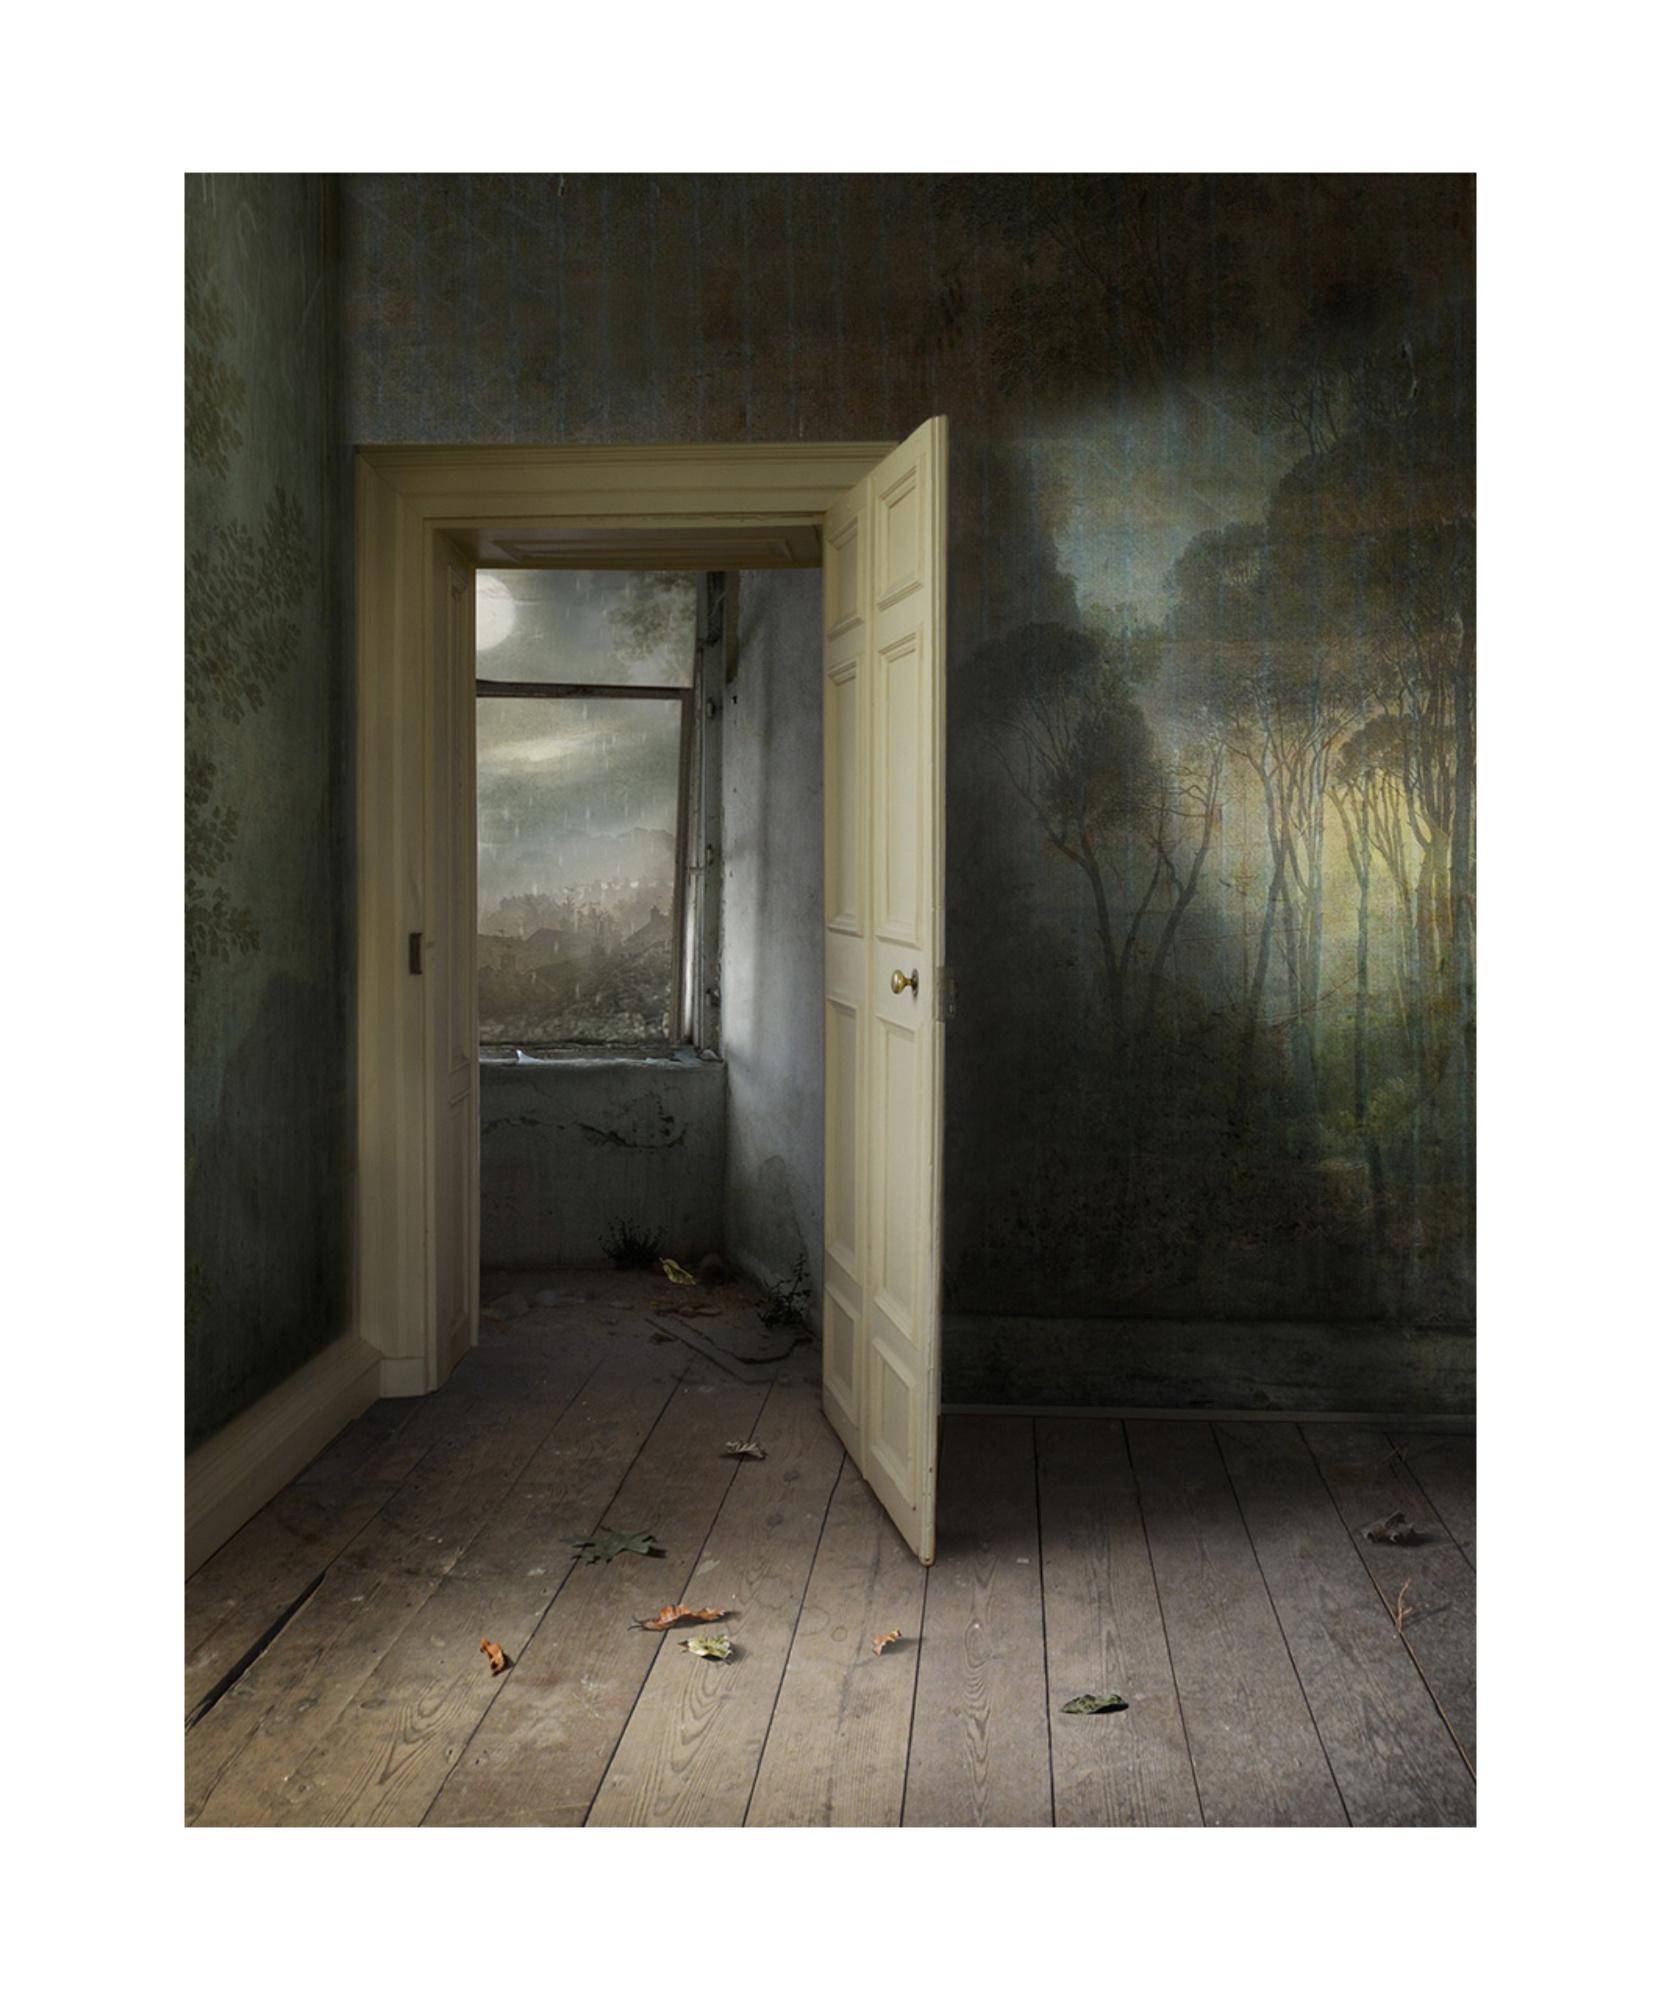 Interieur mit offener Tür – Fotomontage, Archivalisches Pigmentdruck, Inneneinrichtung